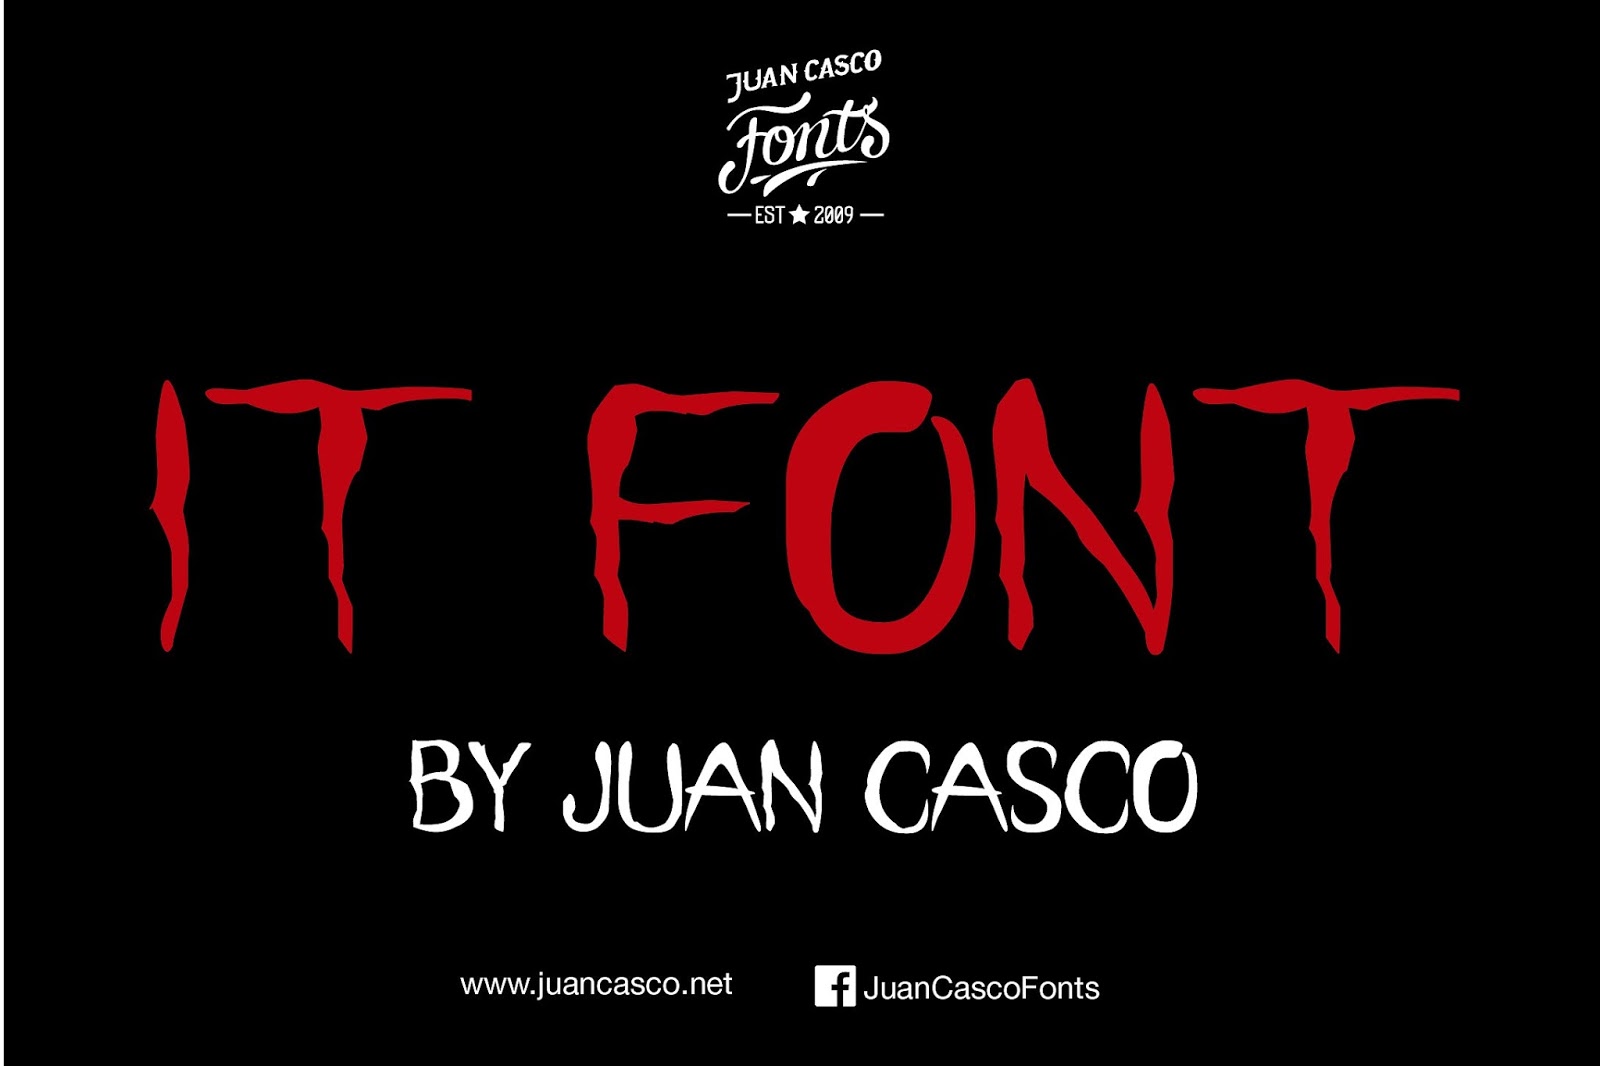 Fonts by Juan Casco